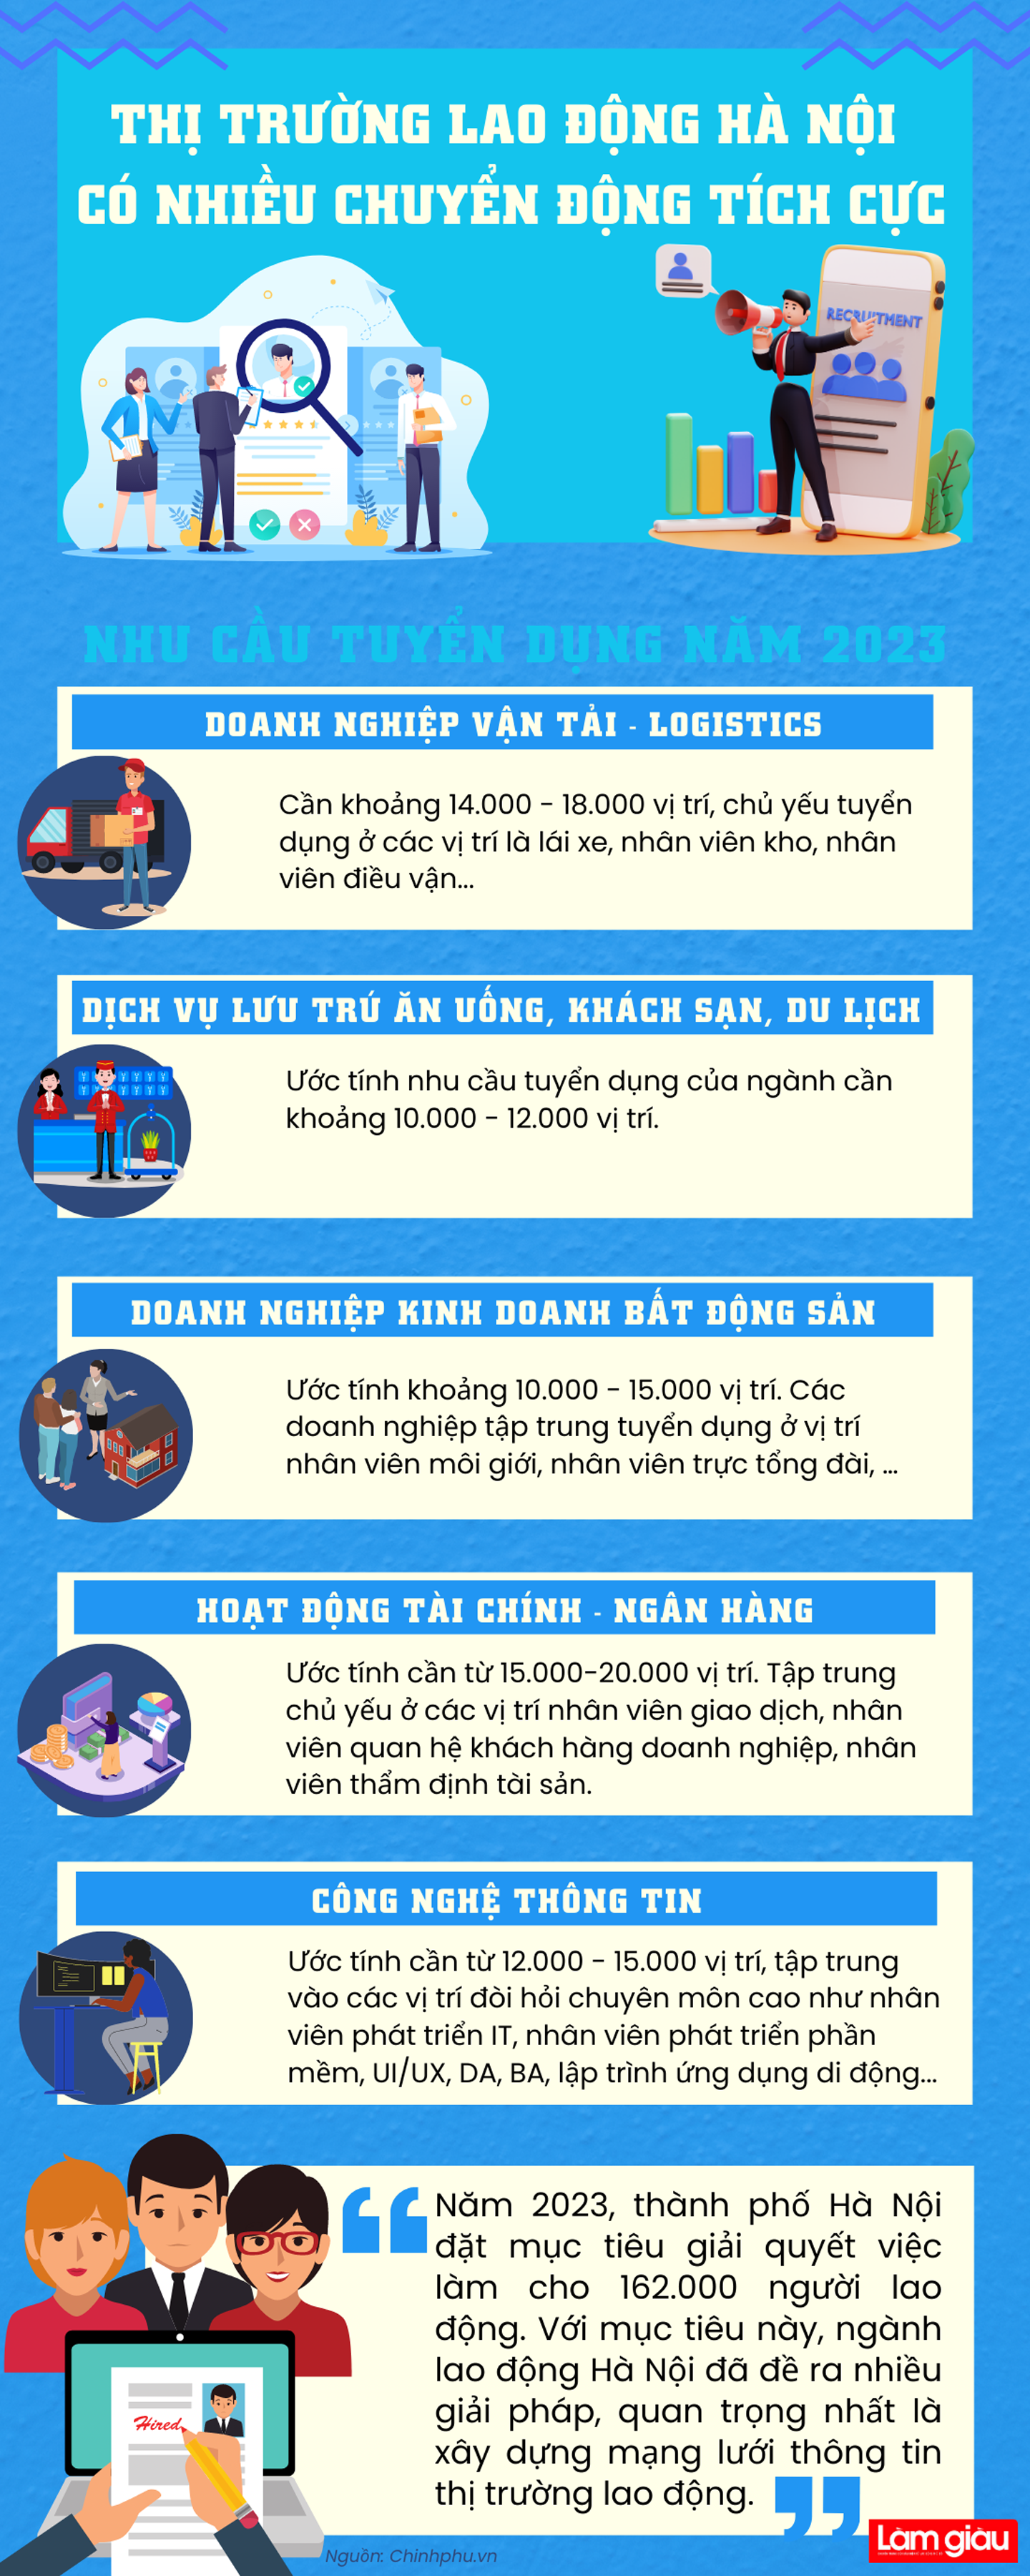 [Infographic]: Thị trường lao động Hà Nội có nhiều chuyển động tích cực